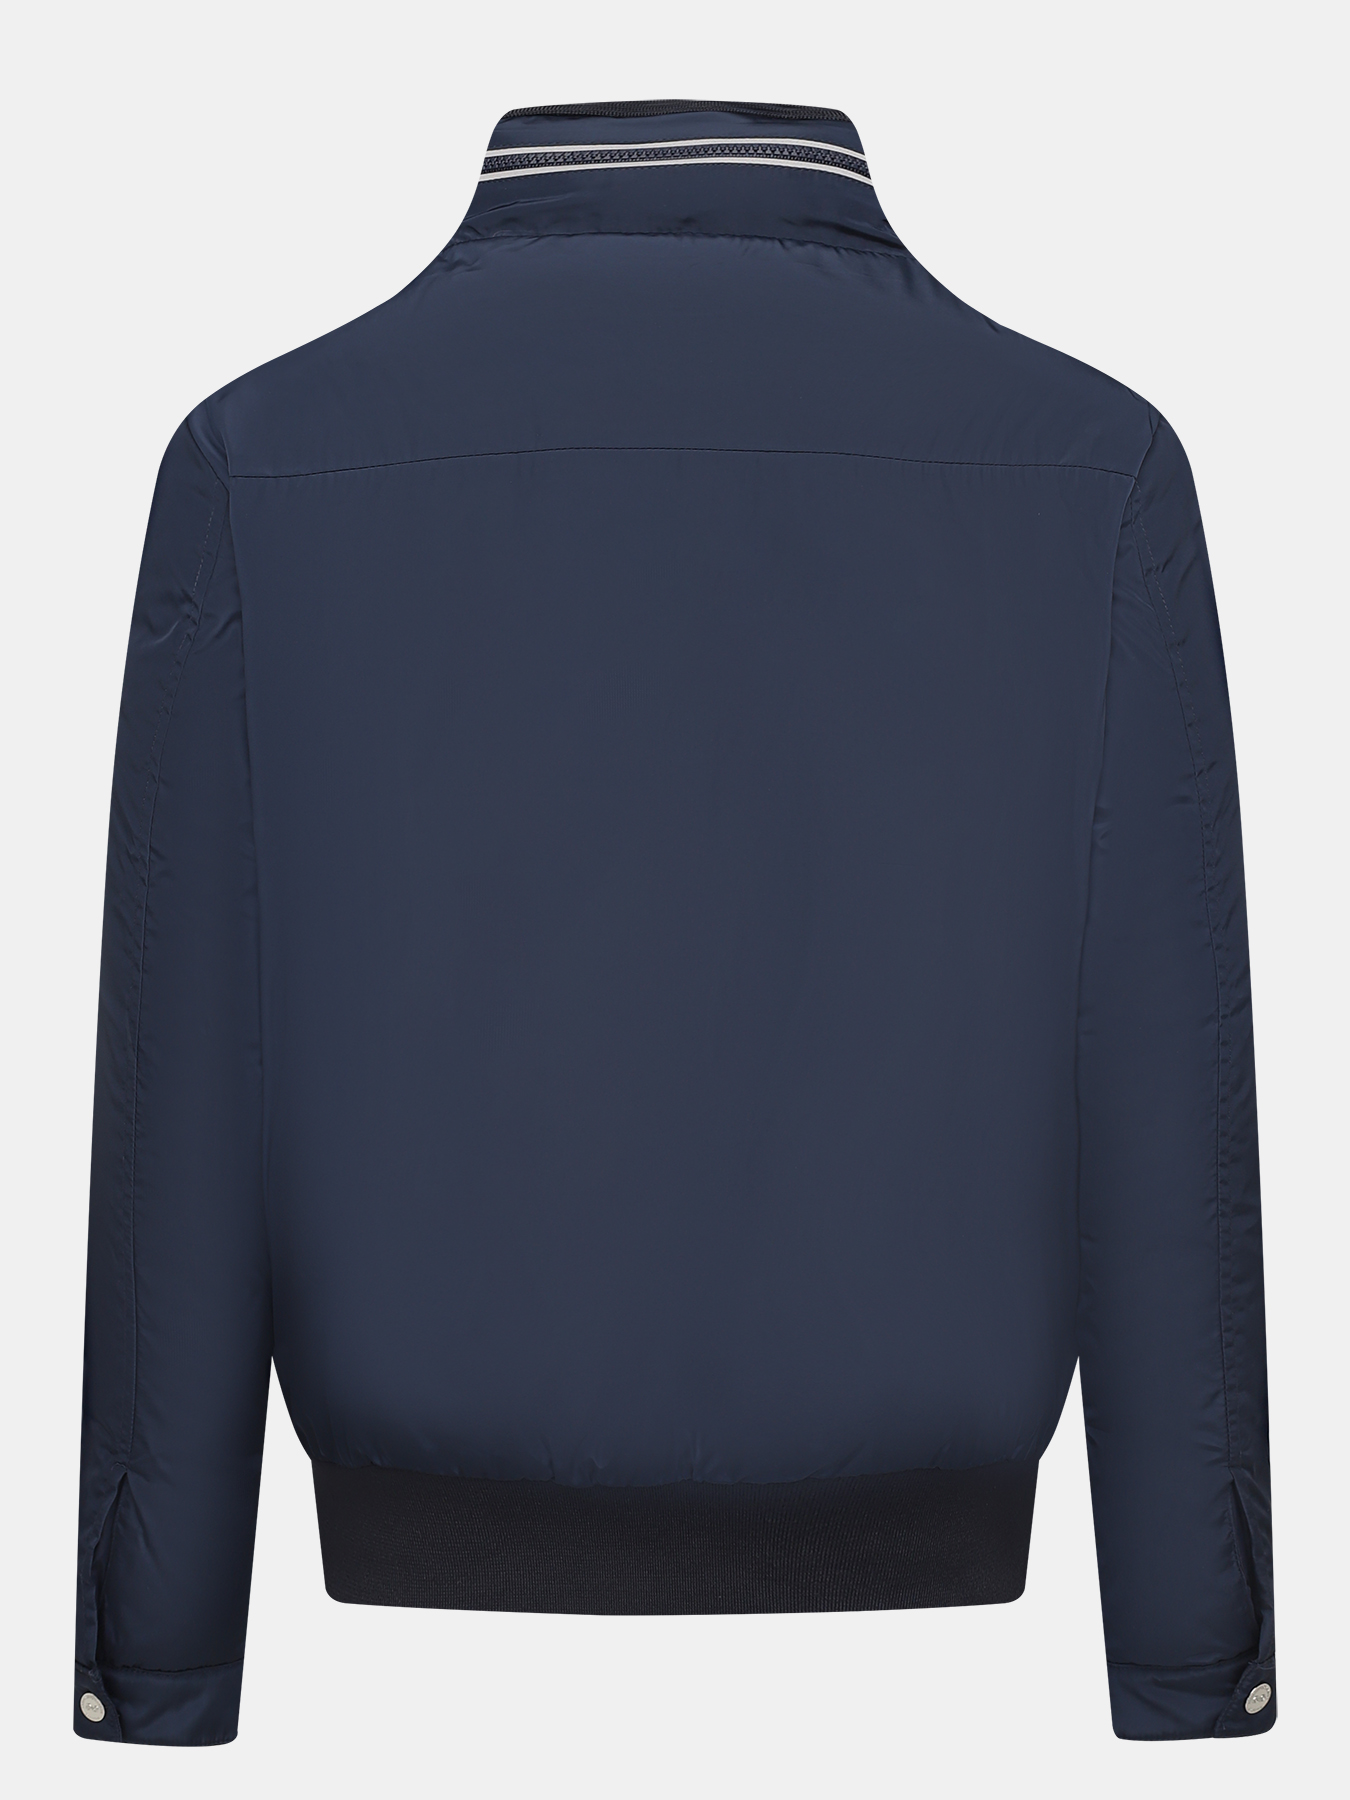 Куртка Alessandro Manzoni Yachting 379540-029, цвет темно-синий, размер 56 - фото 5